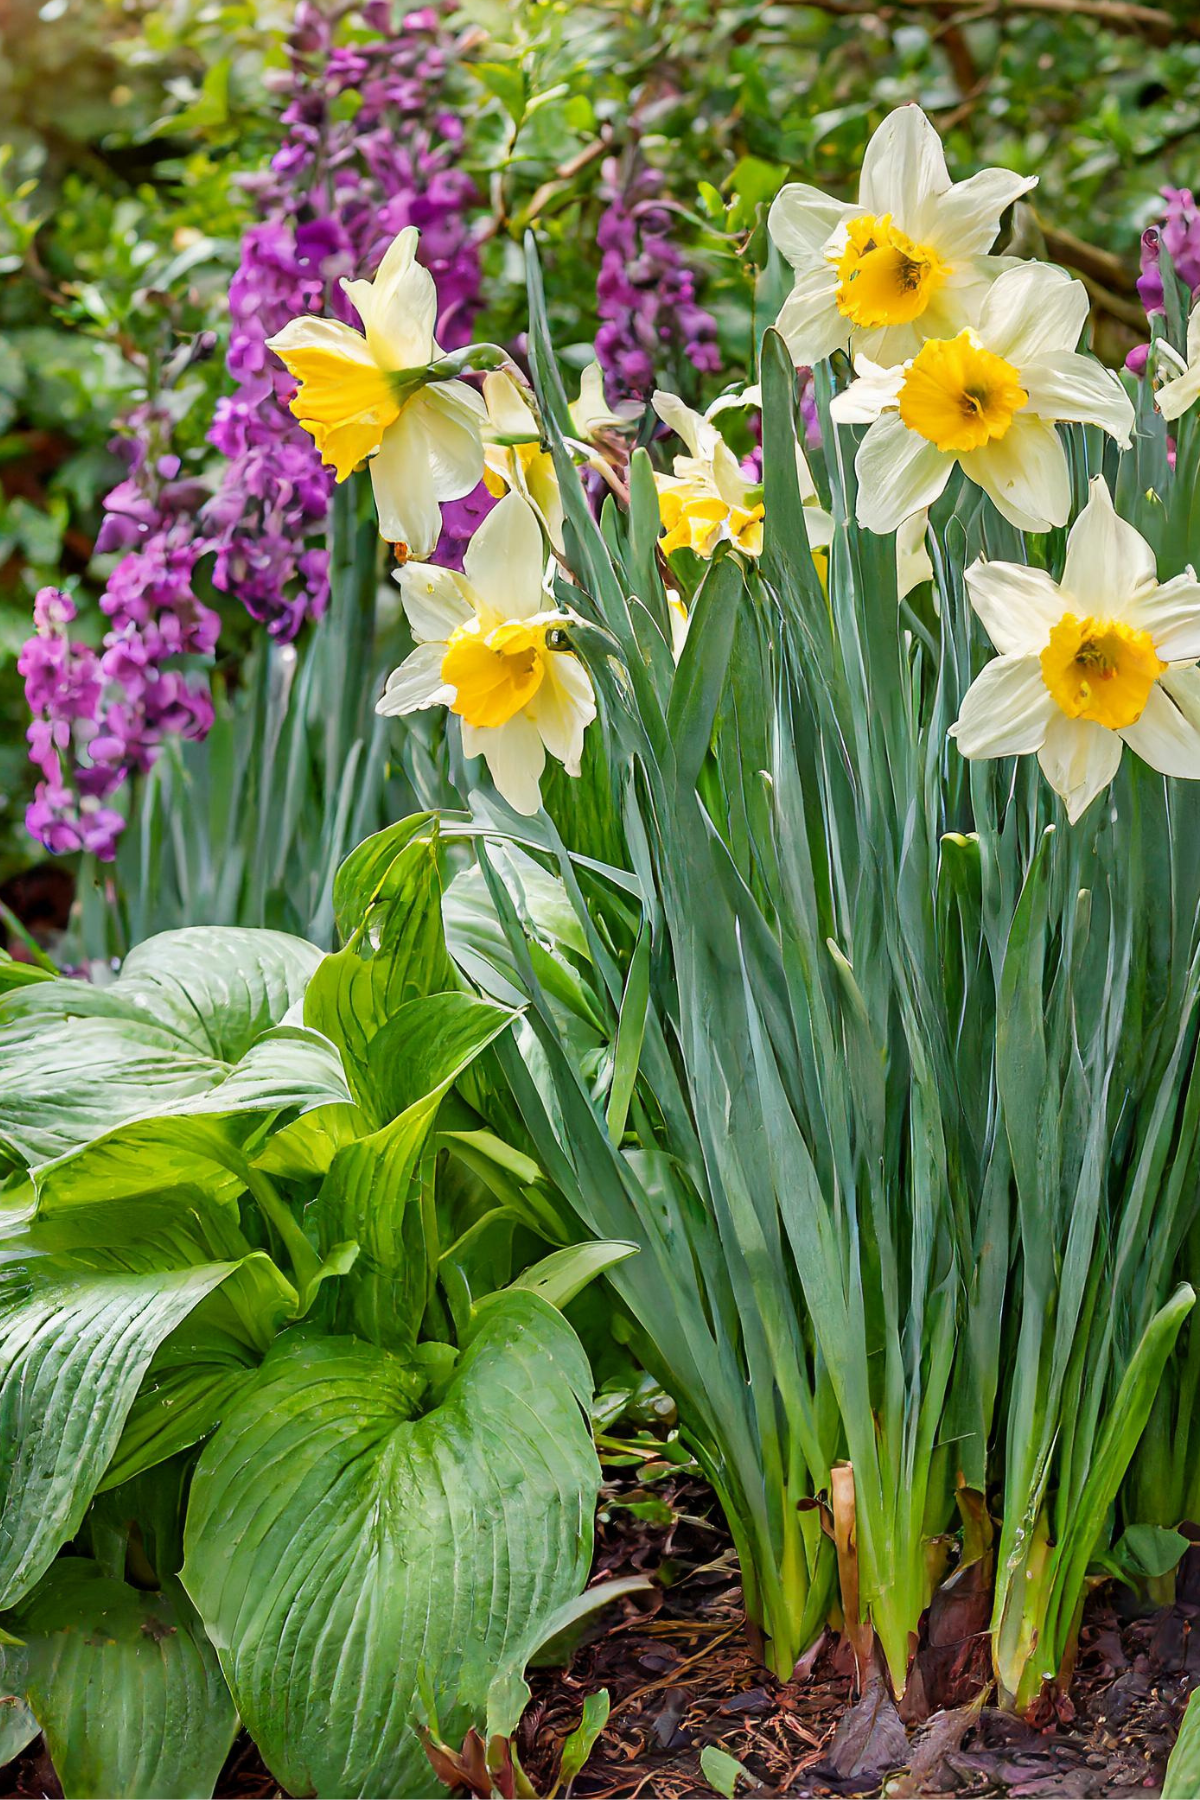 Daffodils and hostas